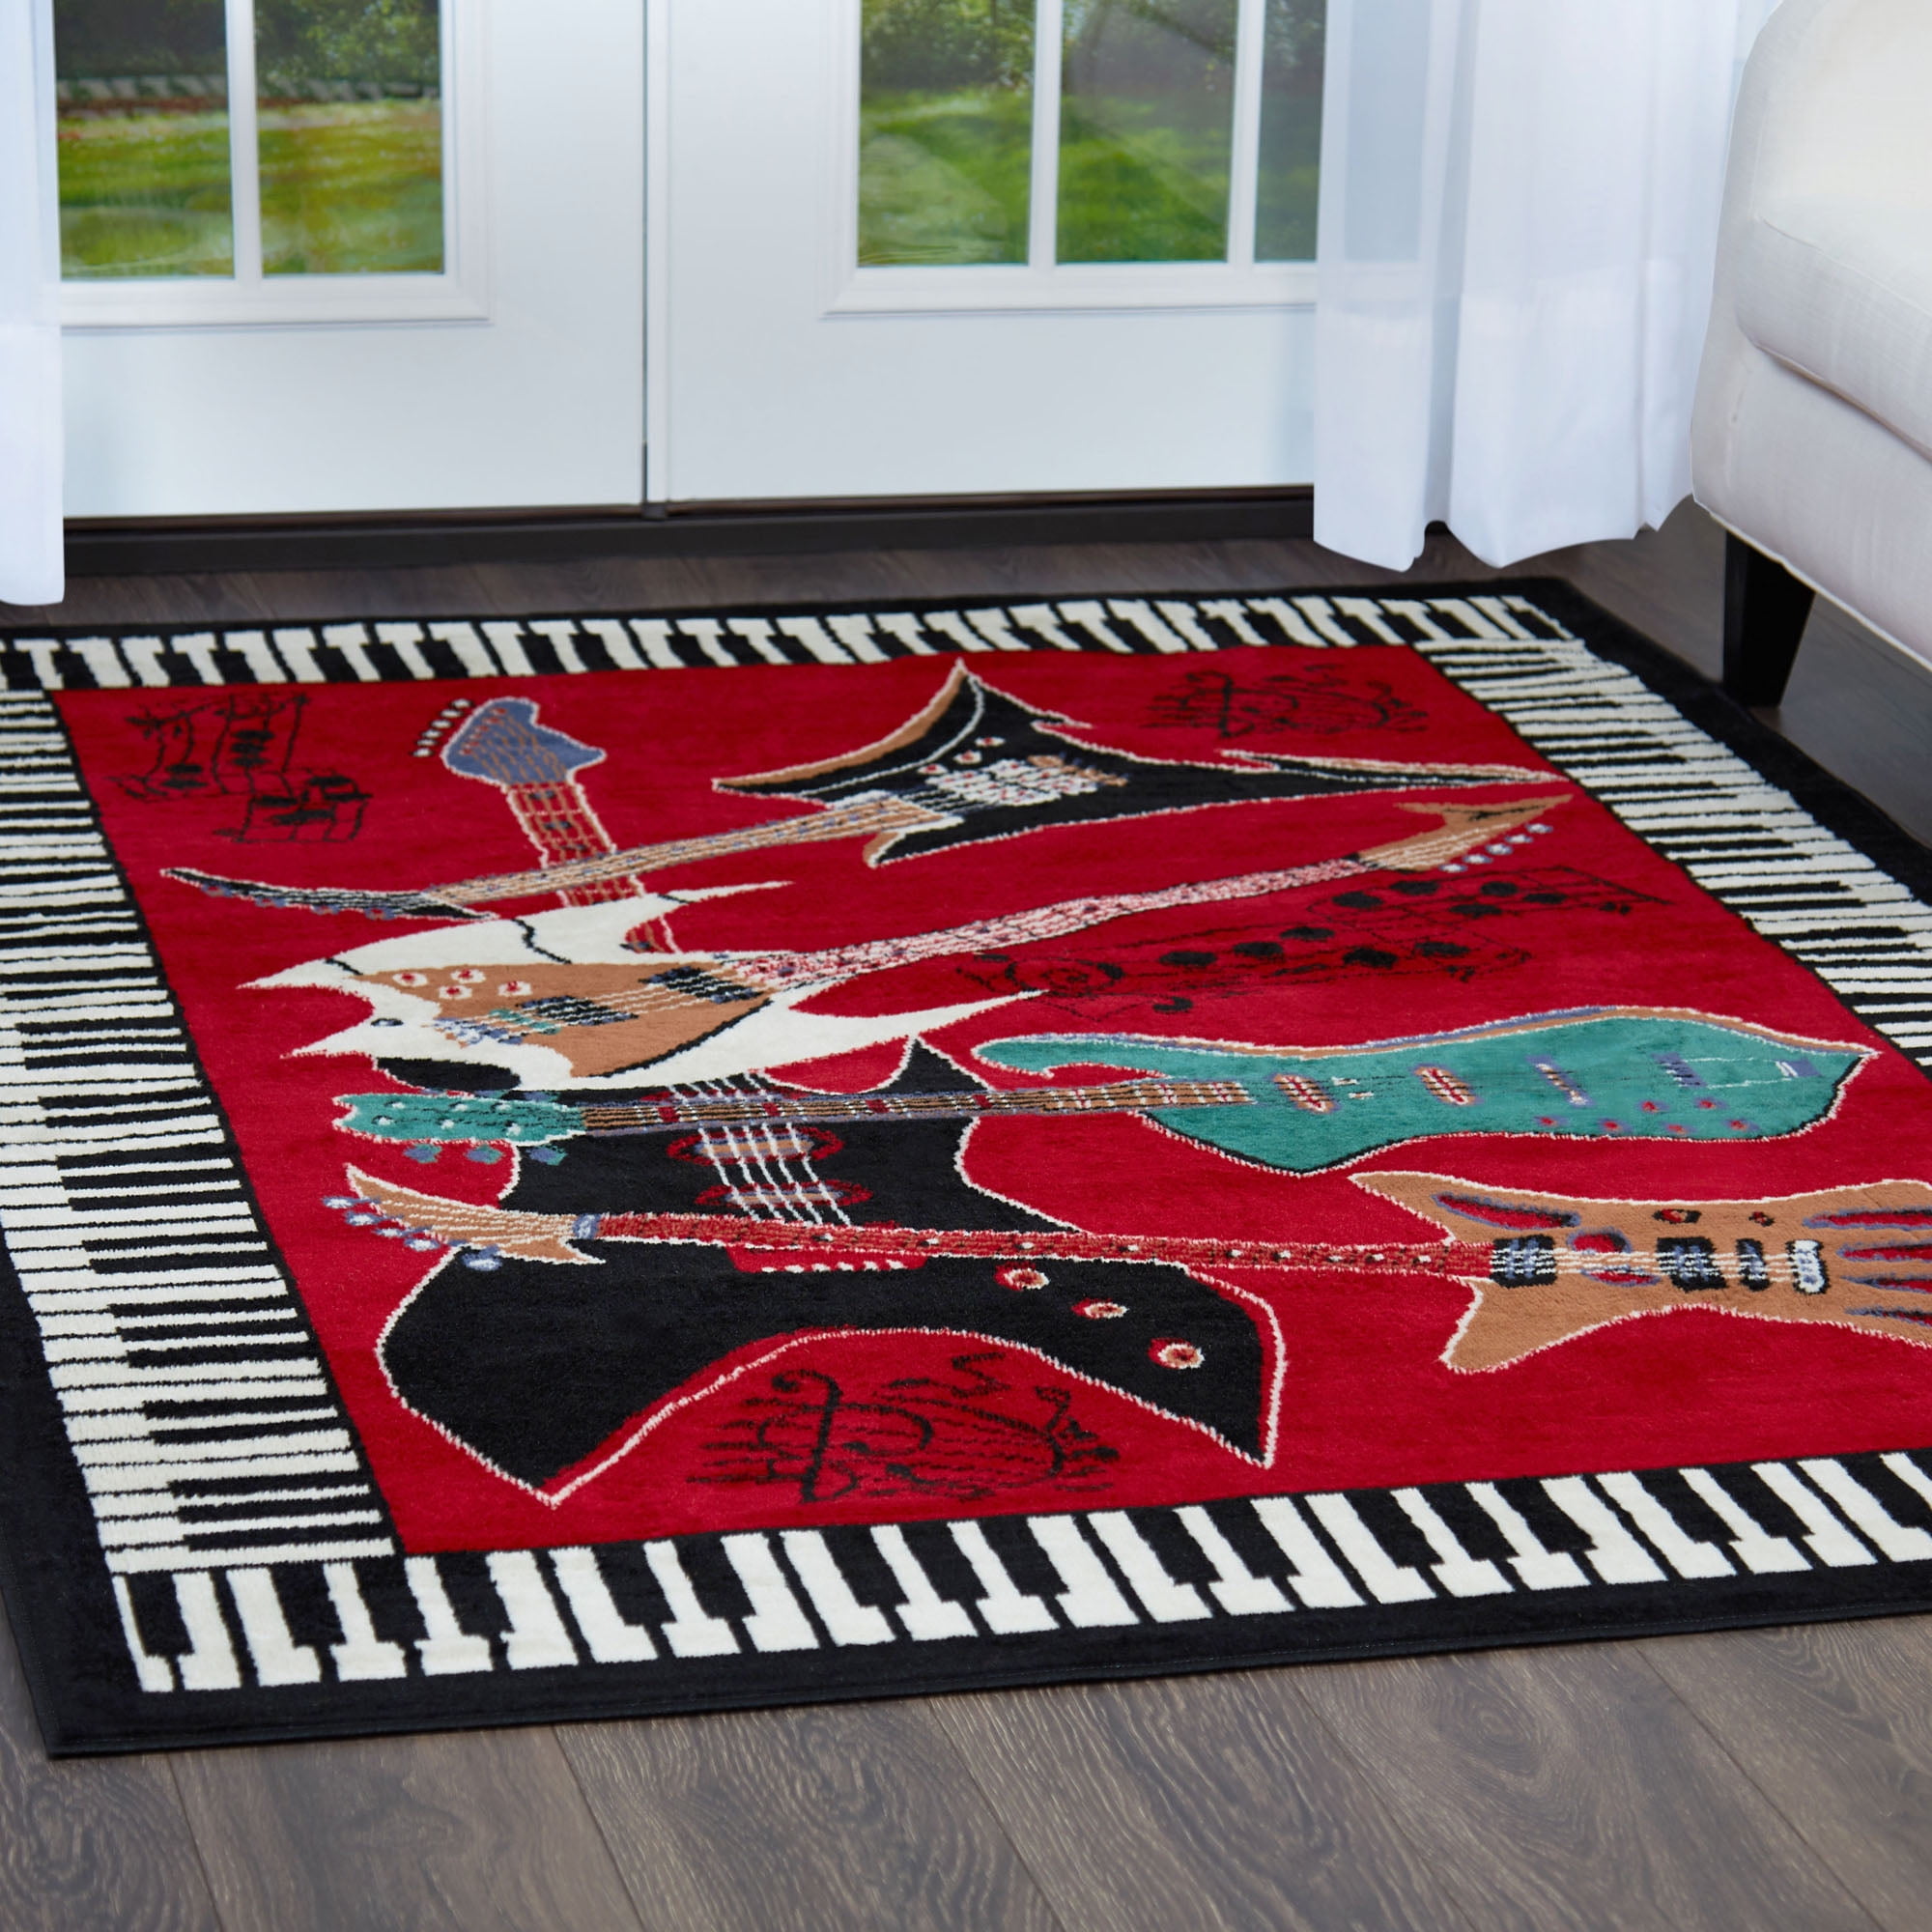 Round Floor Carpet Home Decor Piano Guitar Area Rug Crawling Mat 